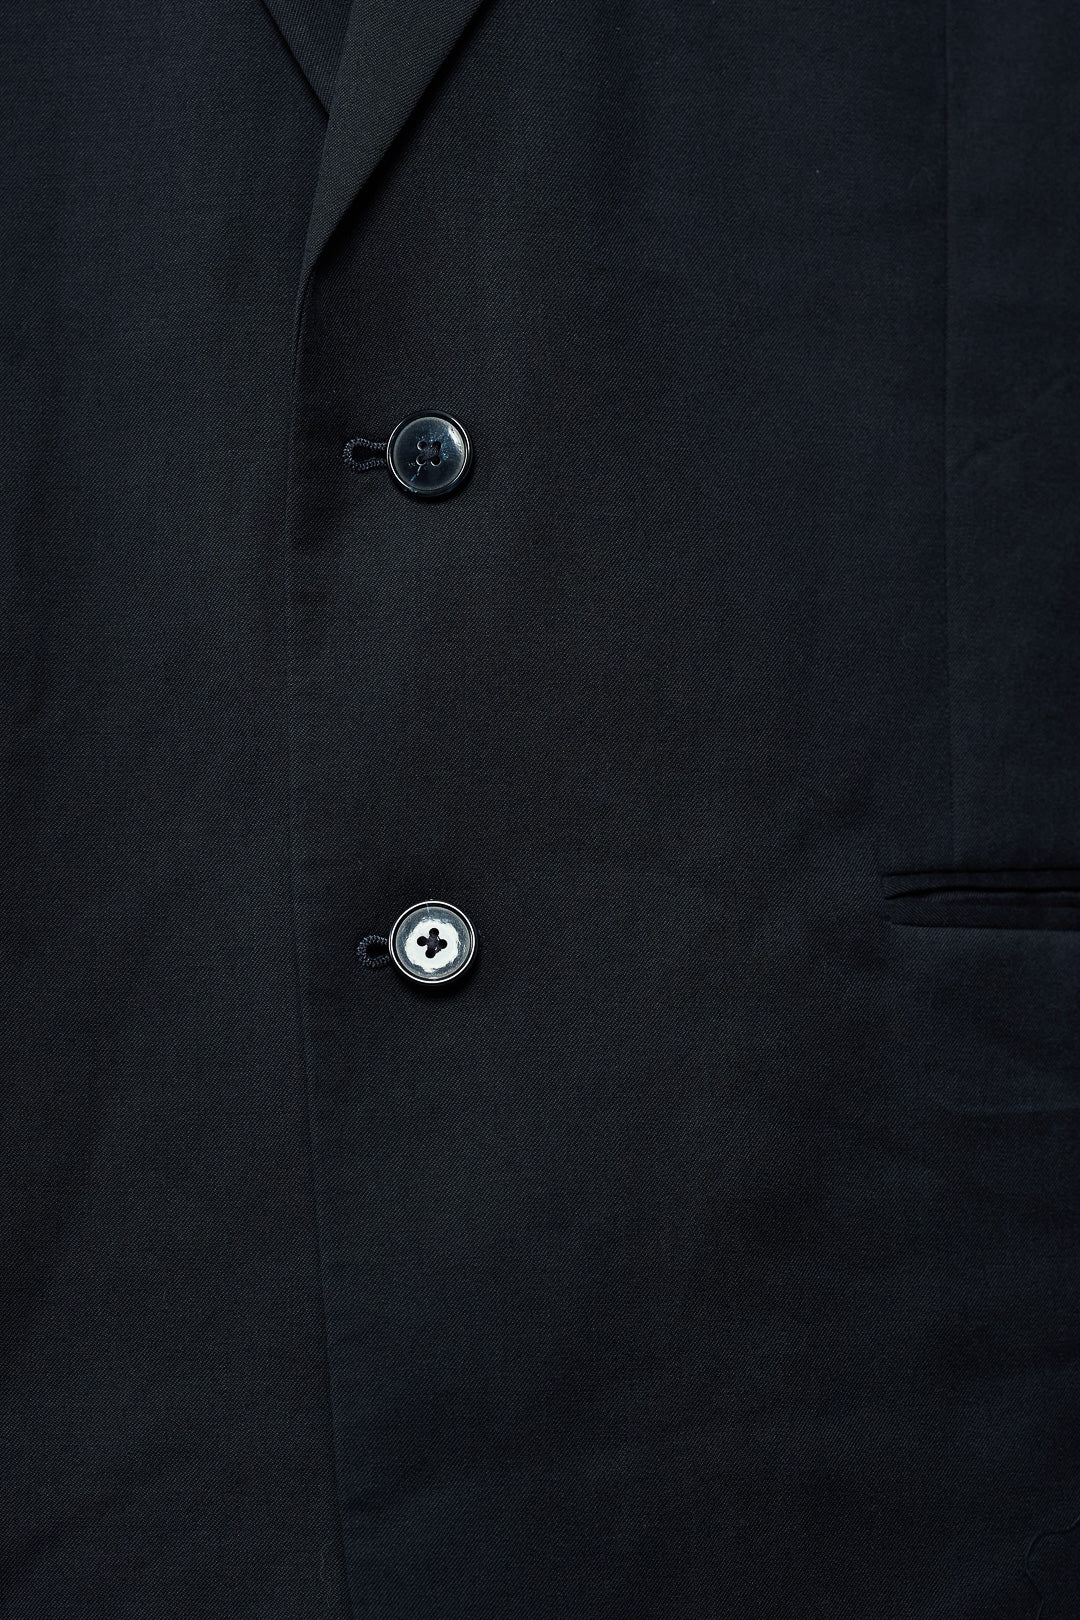 Plain Black Wool Suit